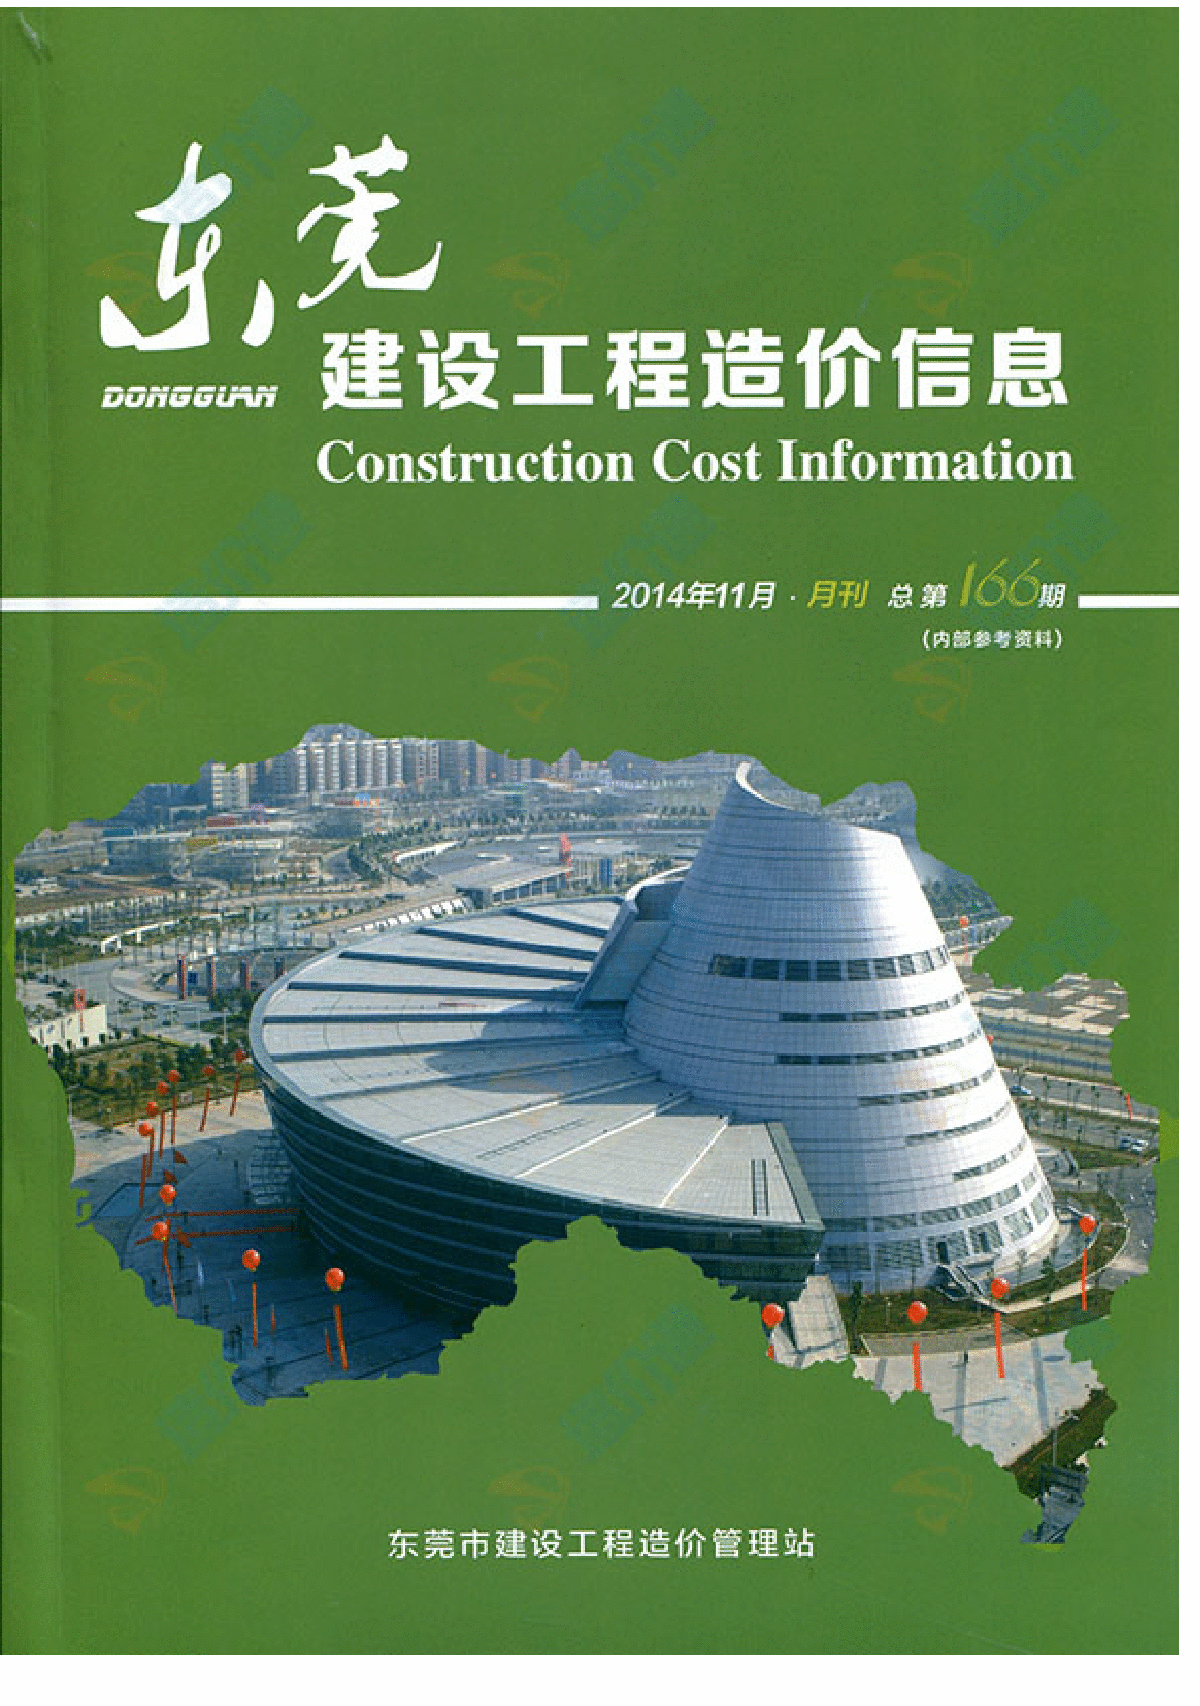 【东莞】建设工程材料价格信息（造价信息全套132页）（2014年11月）